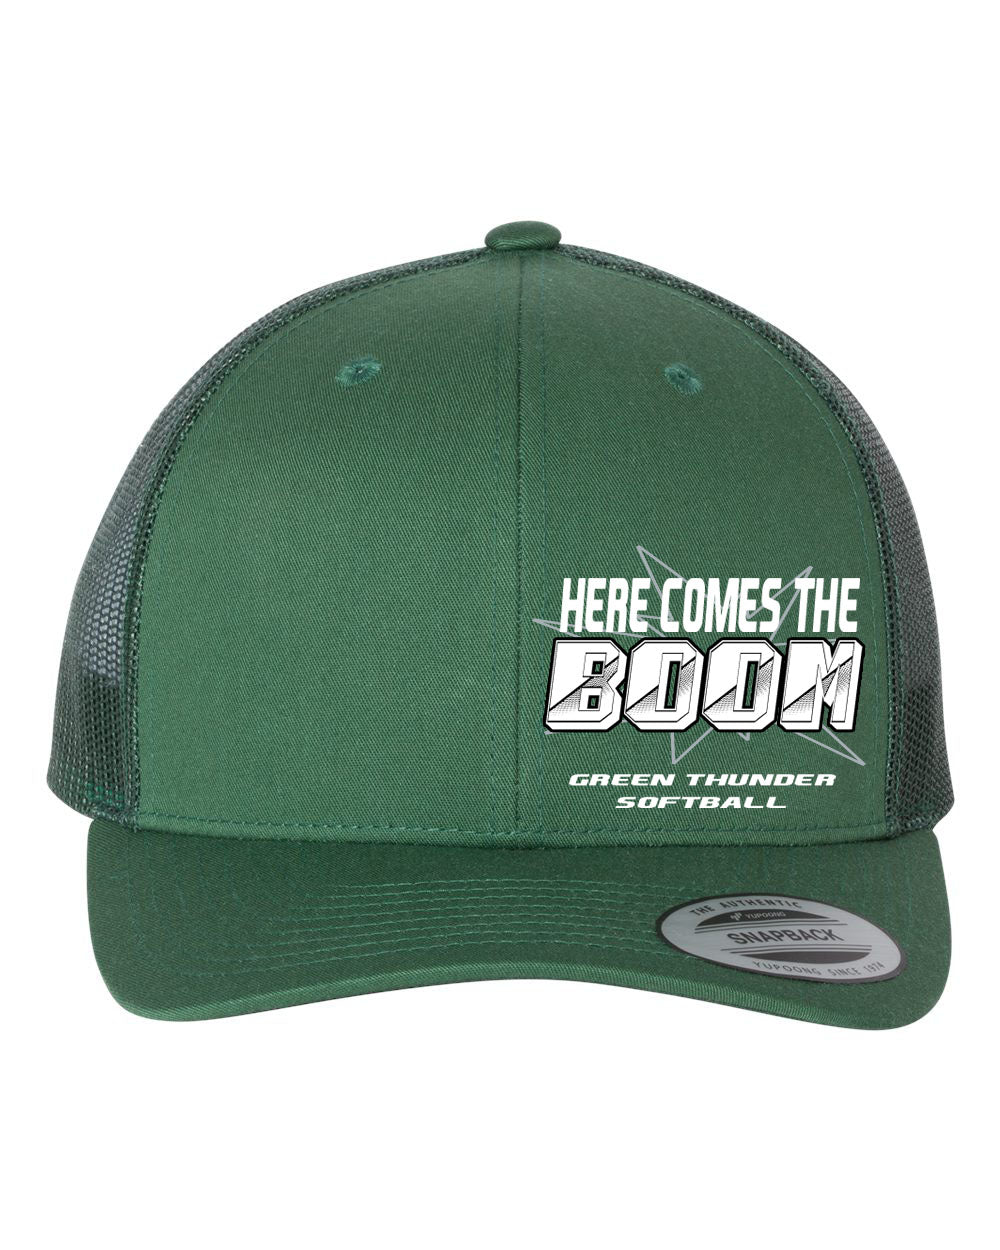 Green Thunder Design 3 Trucker Hat